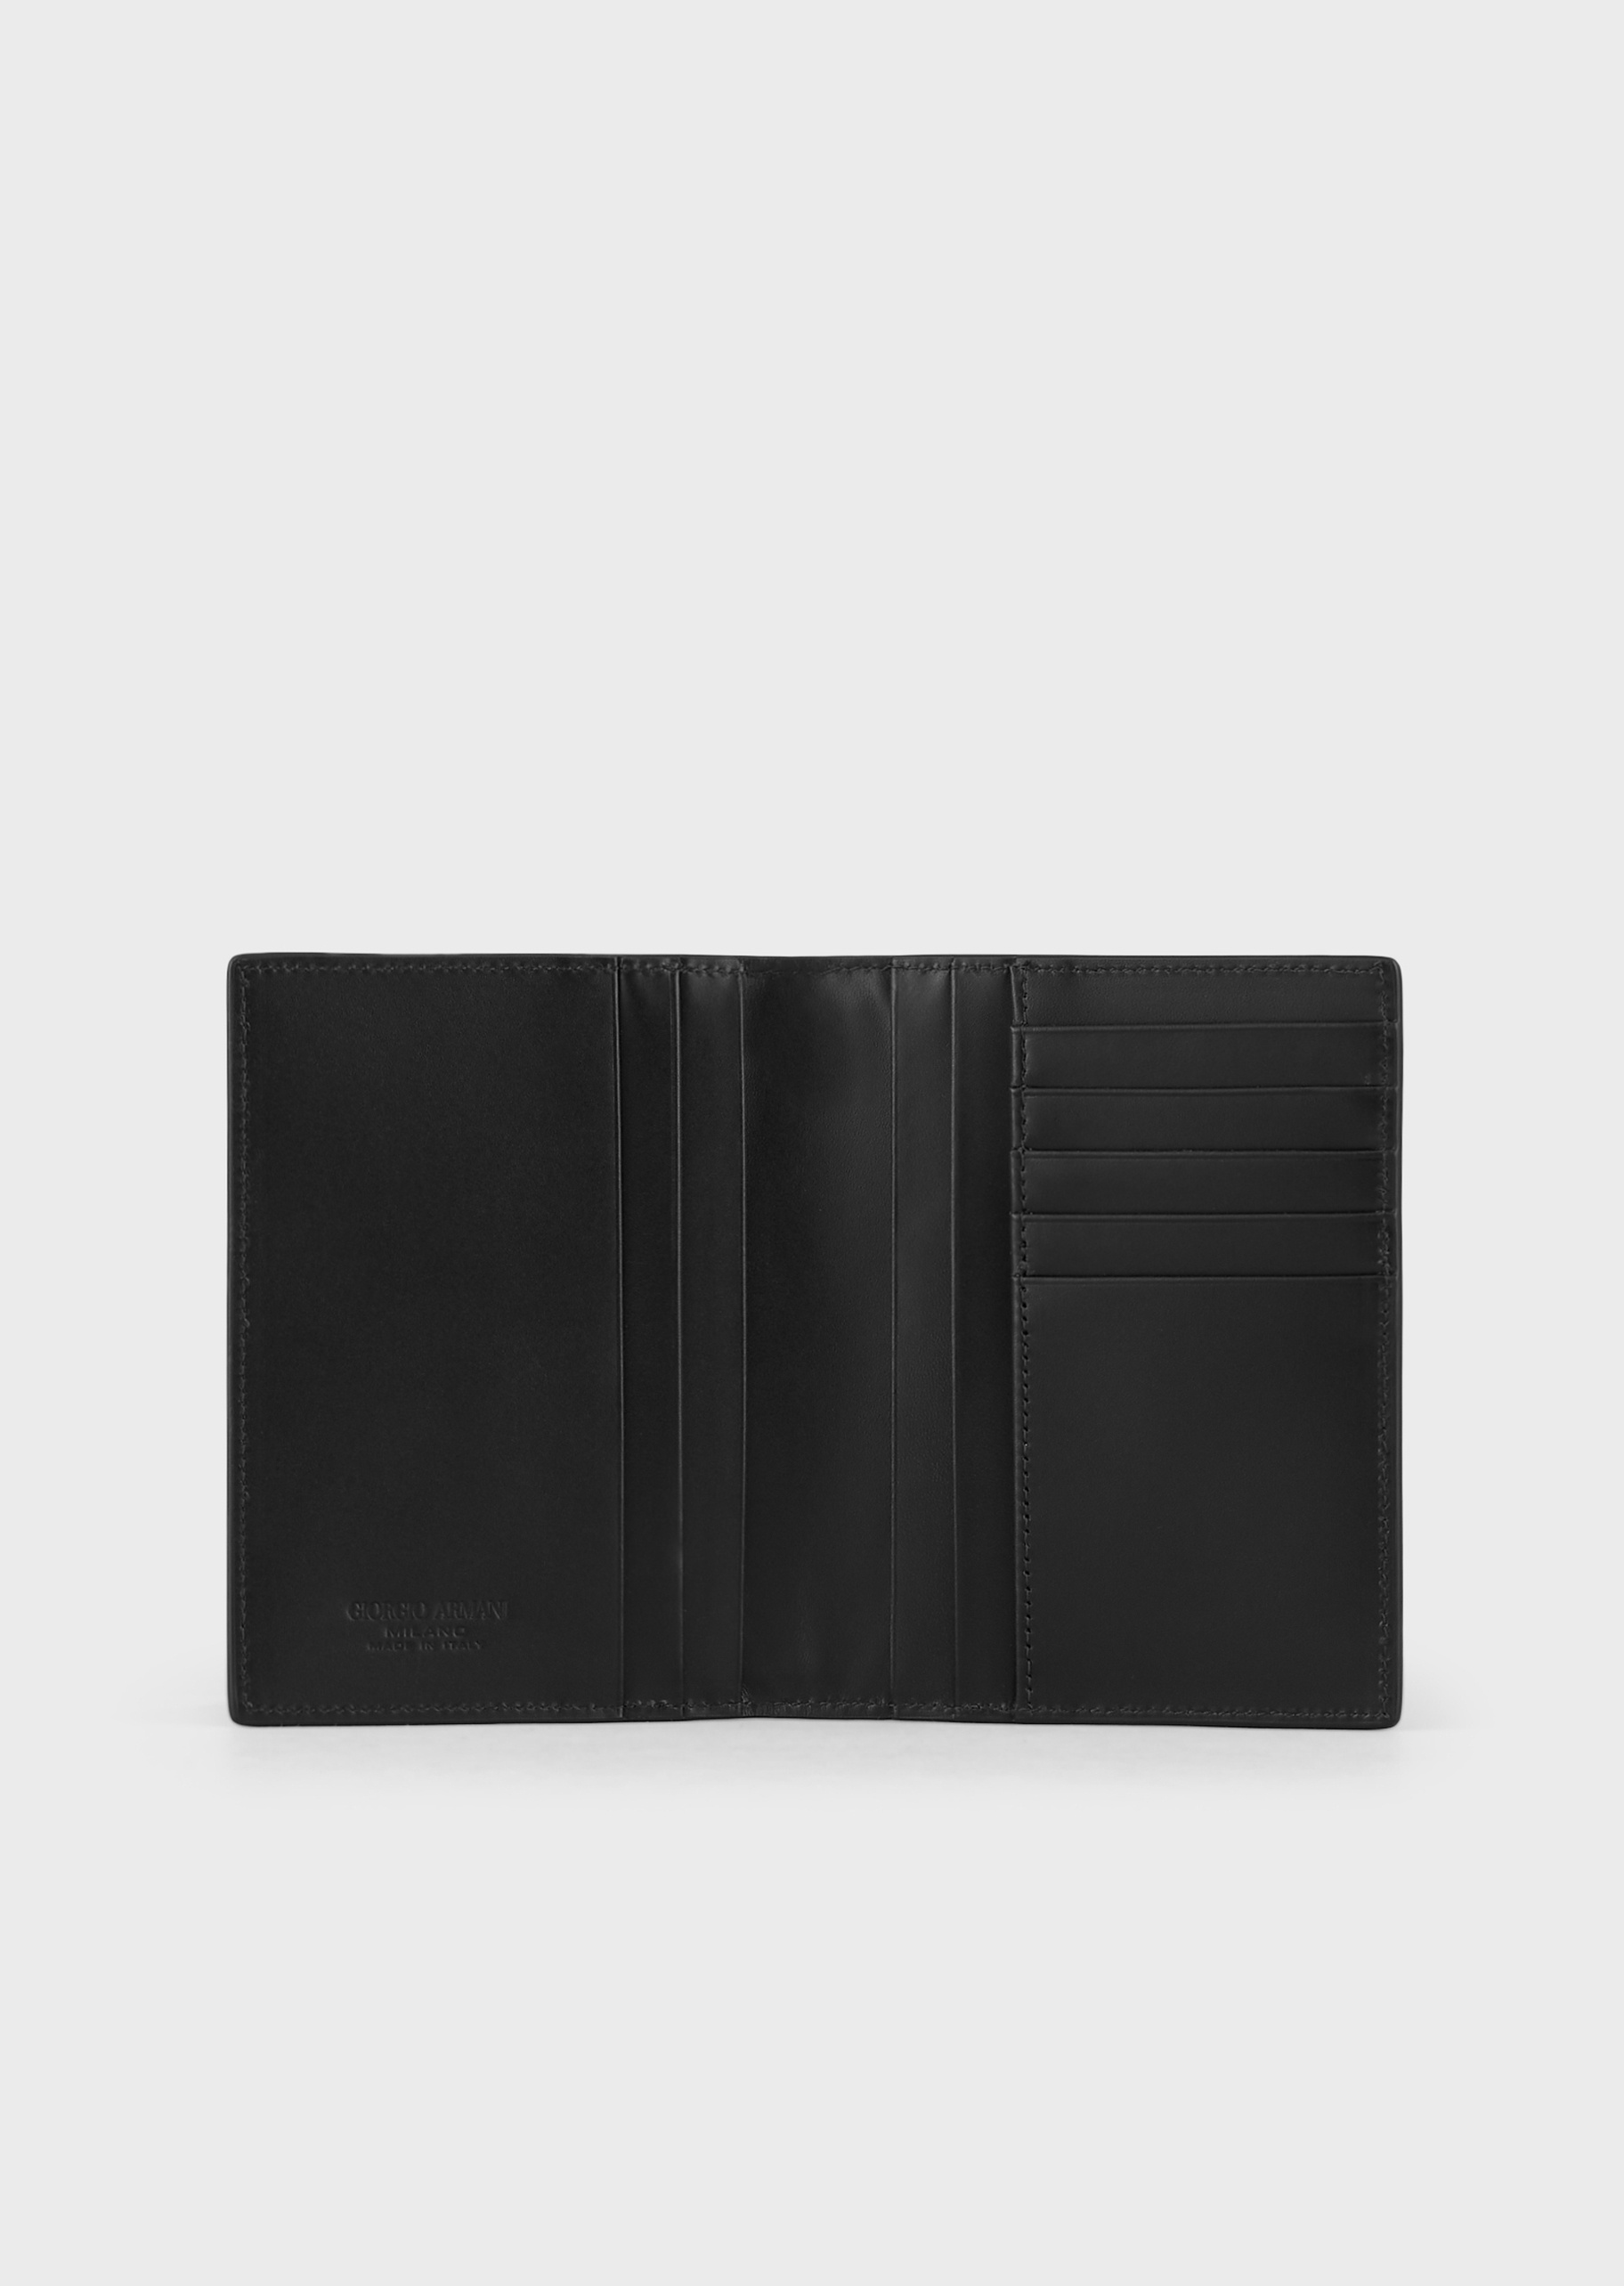 Giorgio Armani 男士犊牛皮革对折矩形多卡位编织手拿护照夹